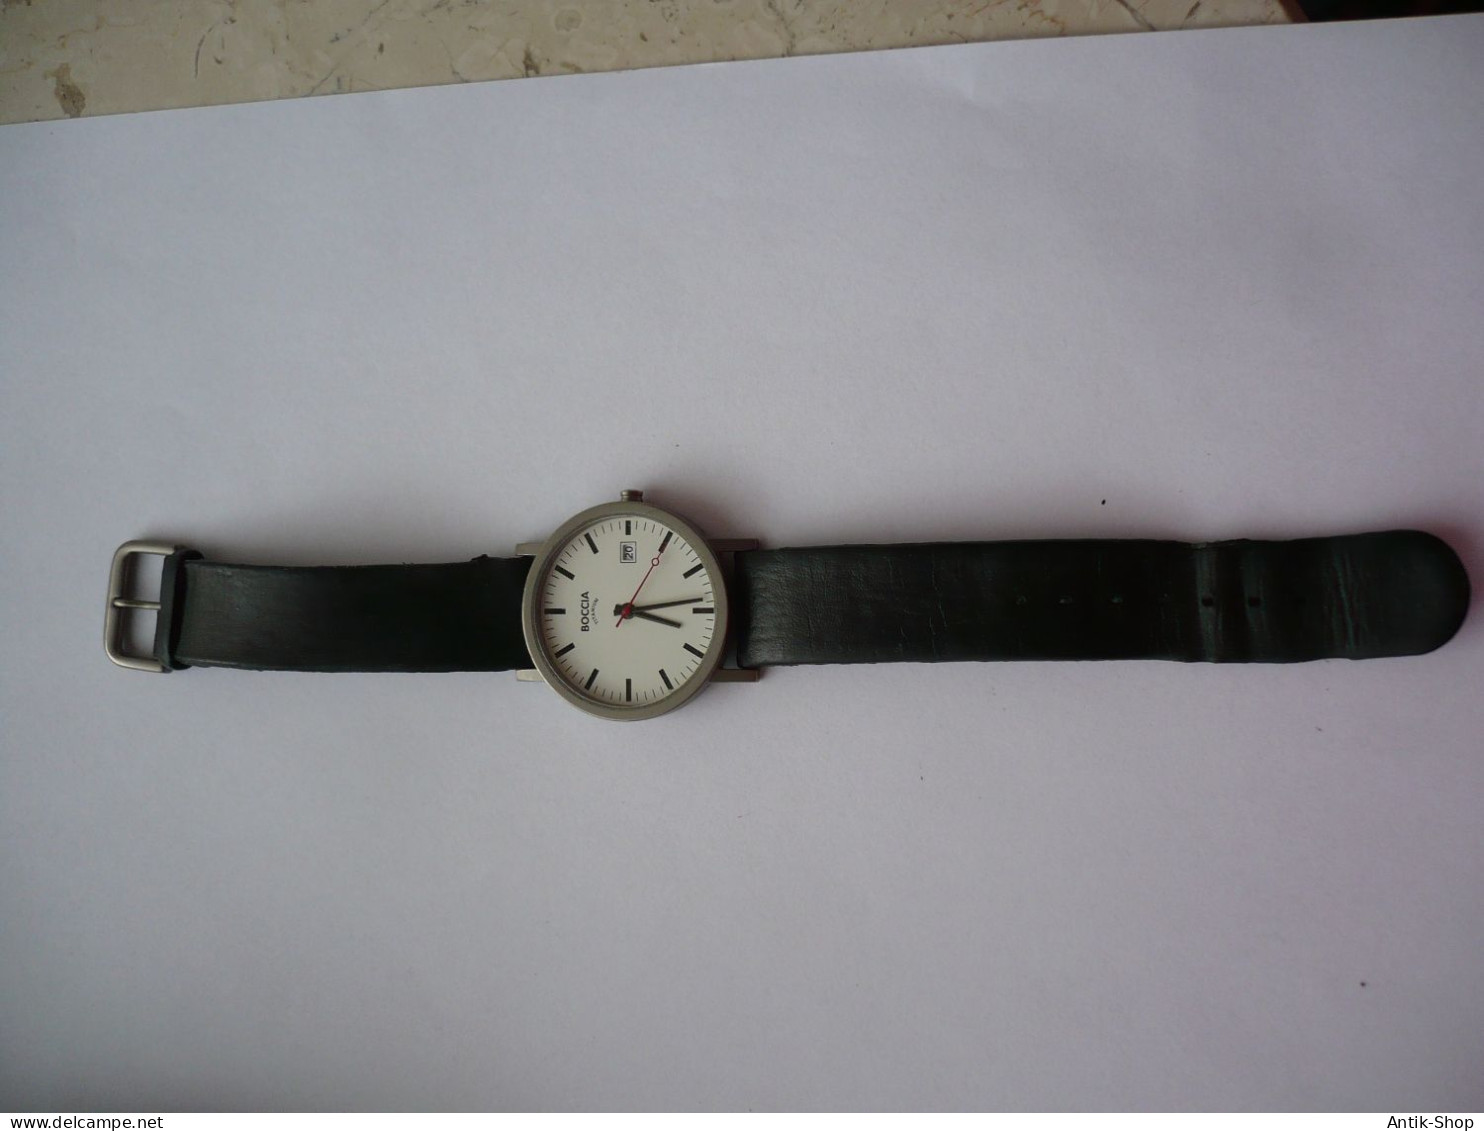 Herren - BOCCIA TITANIUM - 3538-01A - Mit Schwarzem Lederarmband (1135) - Horloge: Luxe